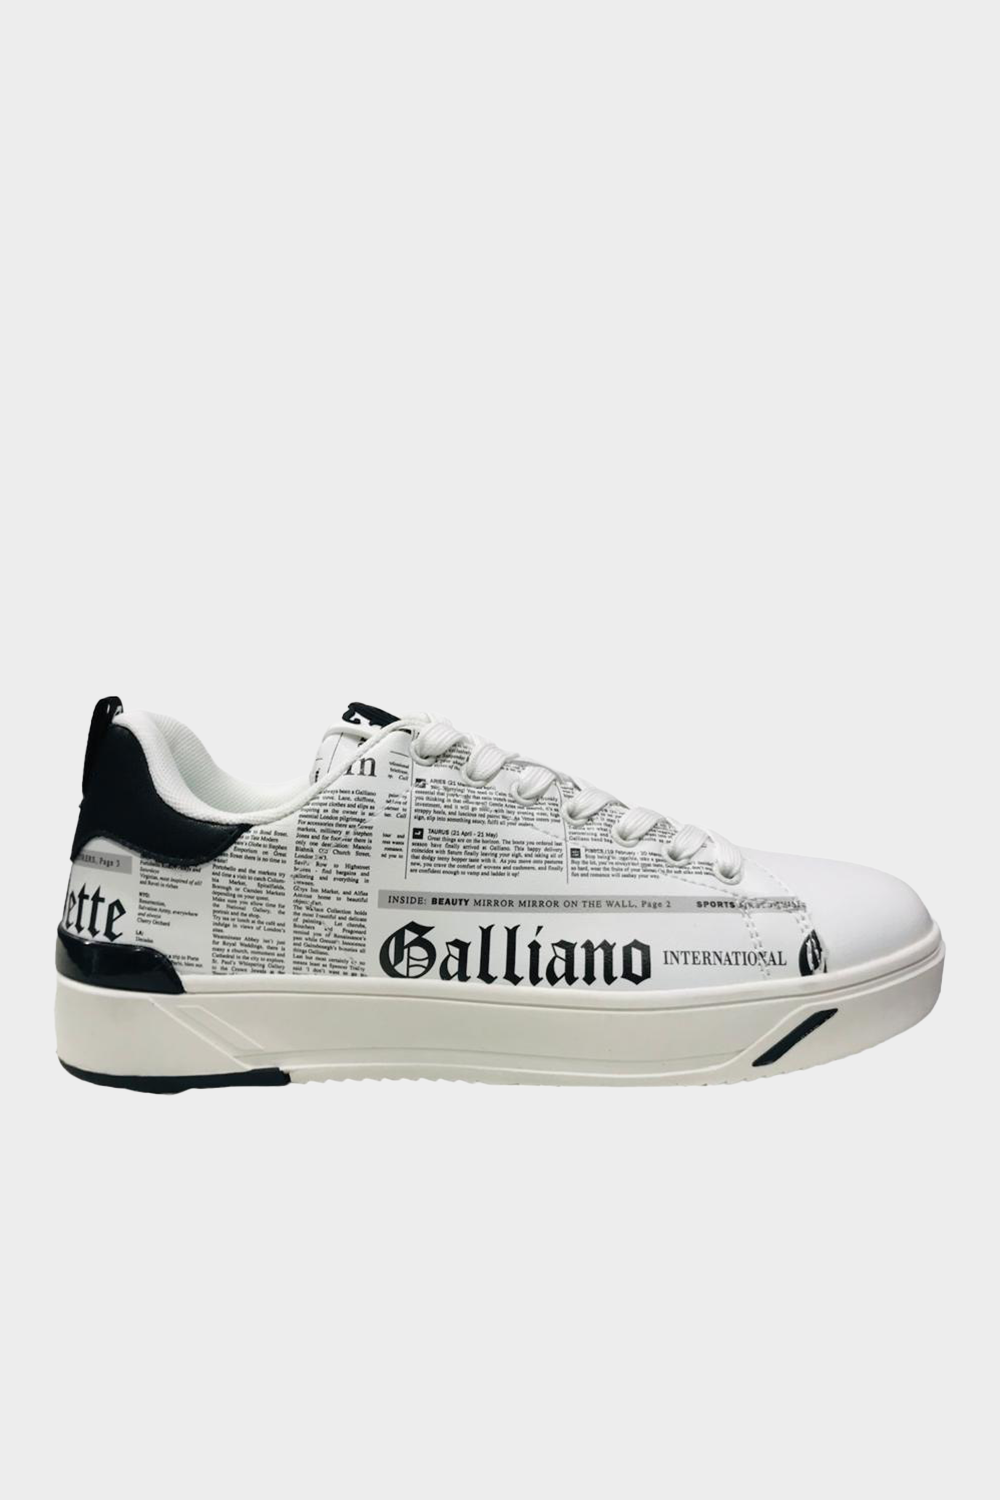 נעלי סניקרס לגברים בצבע לבן JOHN GALLIANO Vendome online | ונדום .